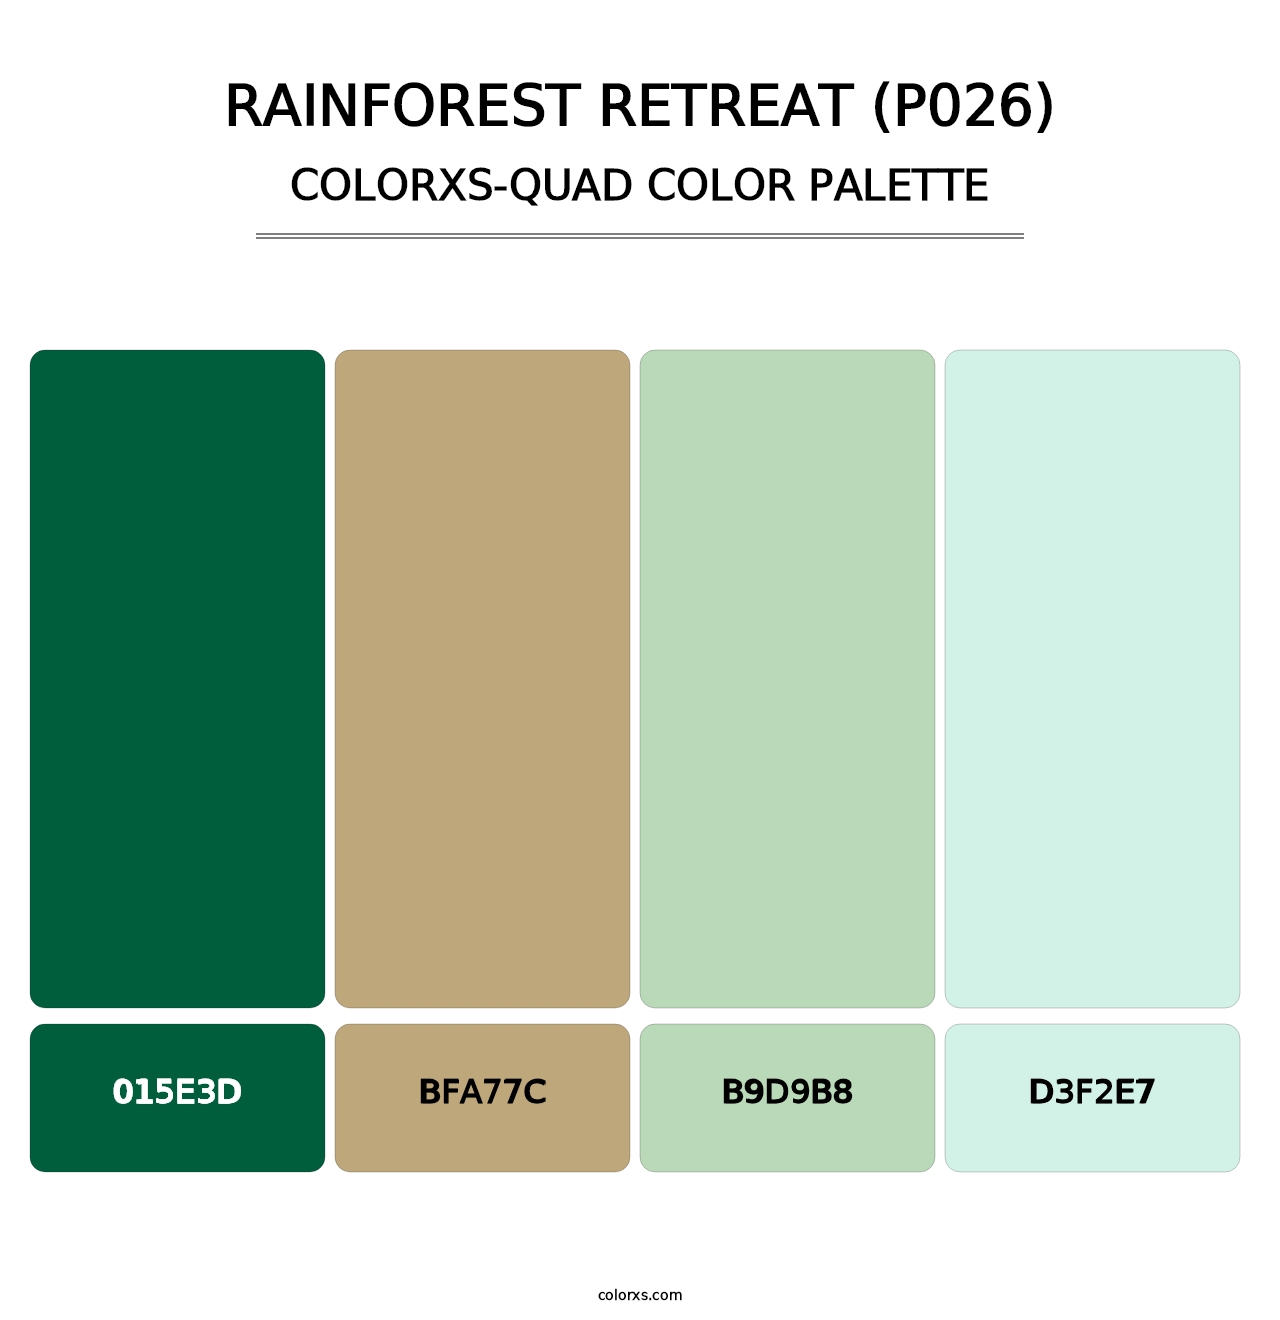 Rainforest Retreat (P026) - Colorxs Quad Palette